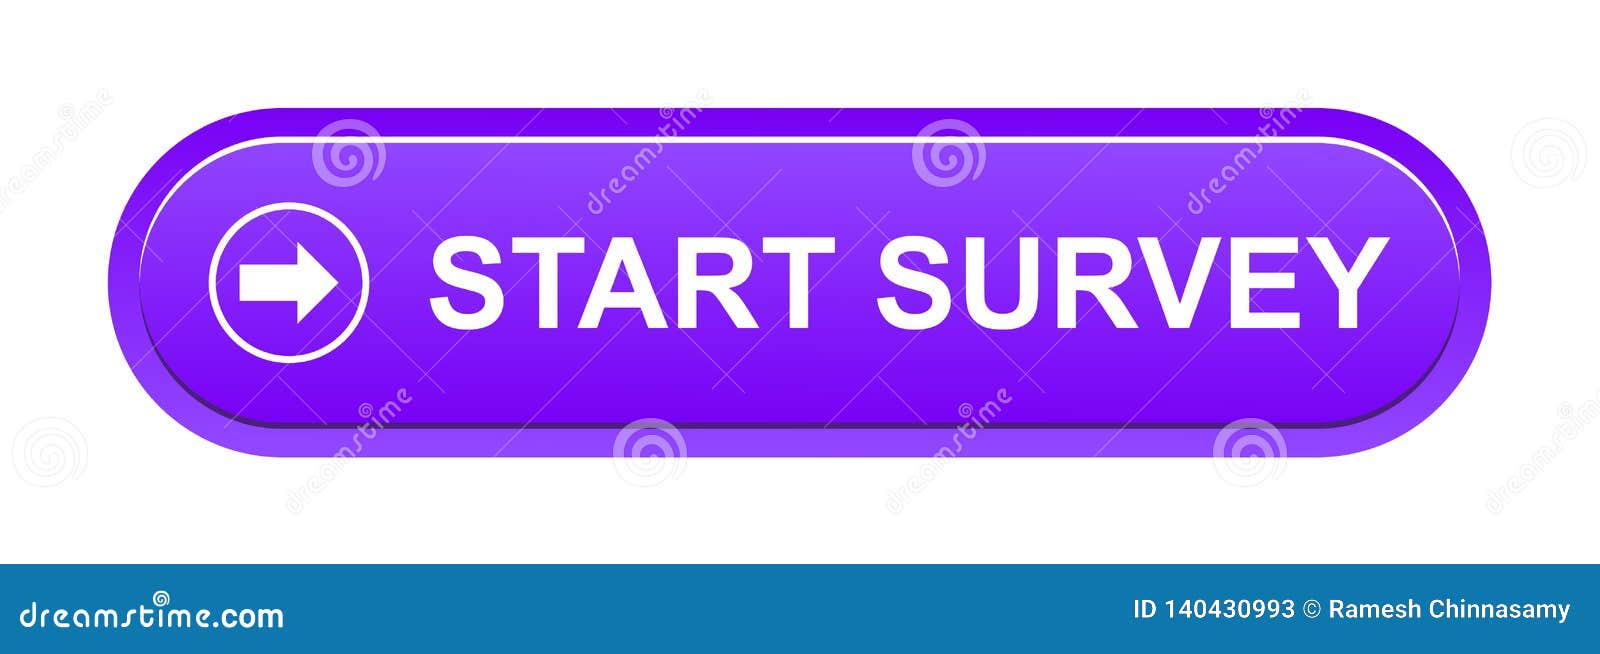 Start survey button stock vector. Illustration of advertisement - 140431569